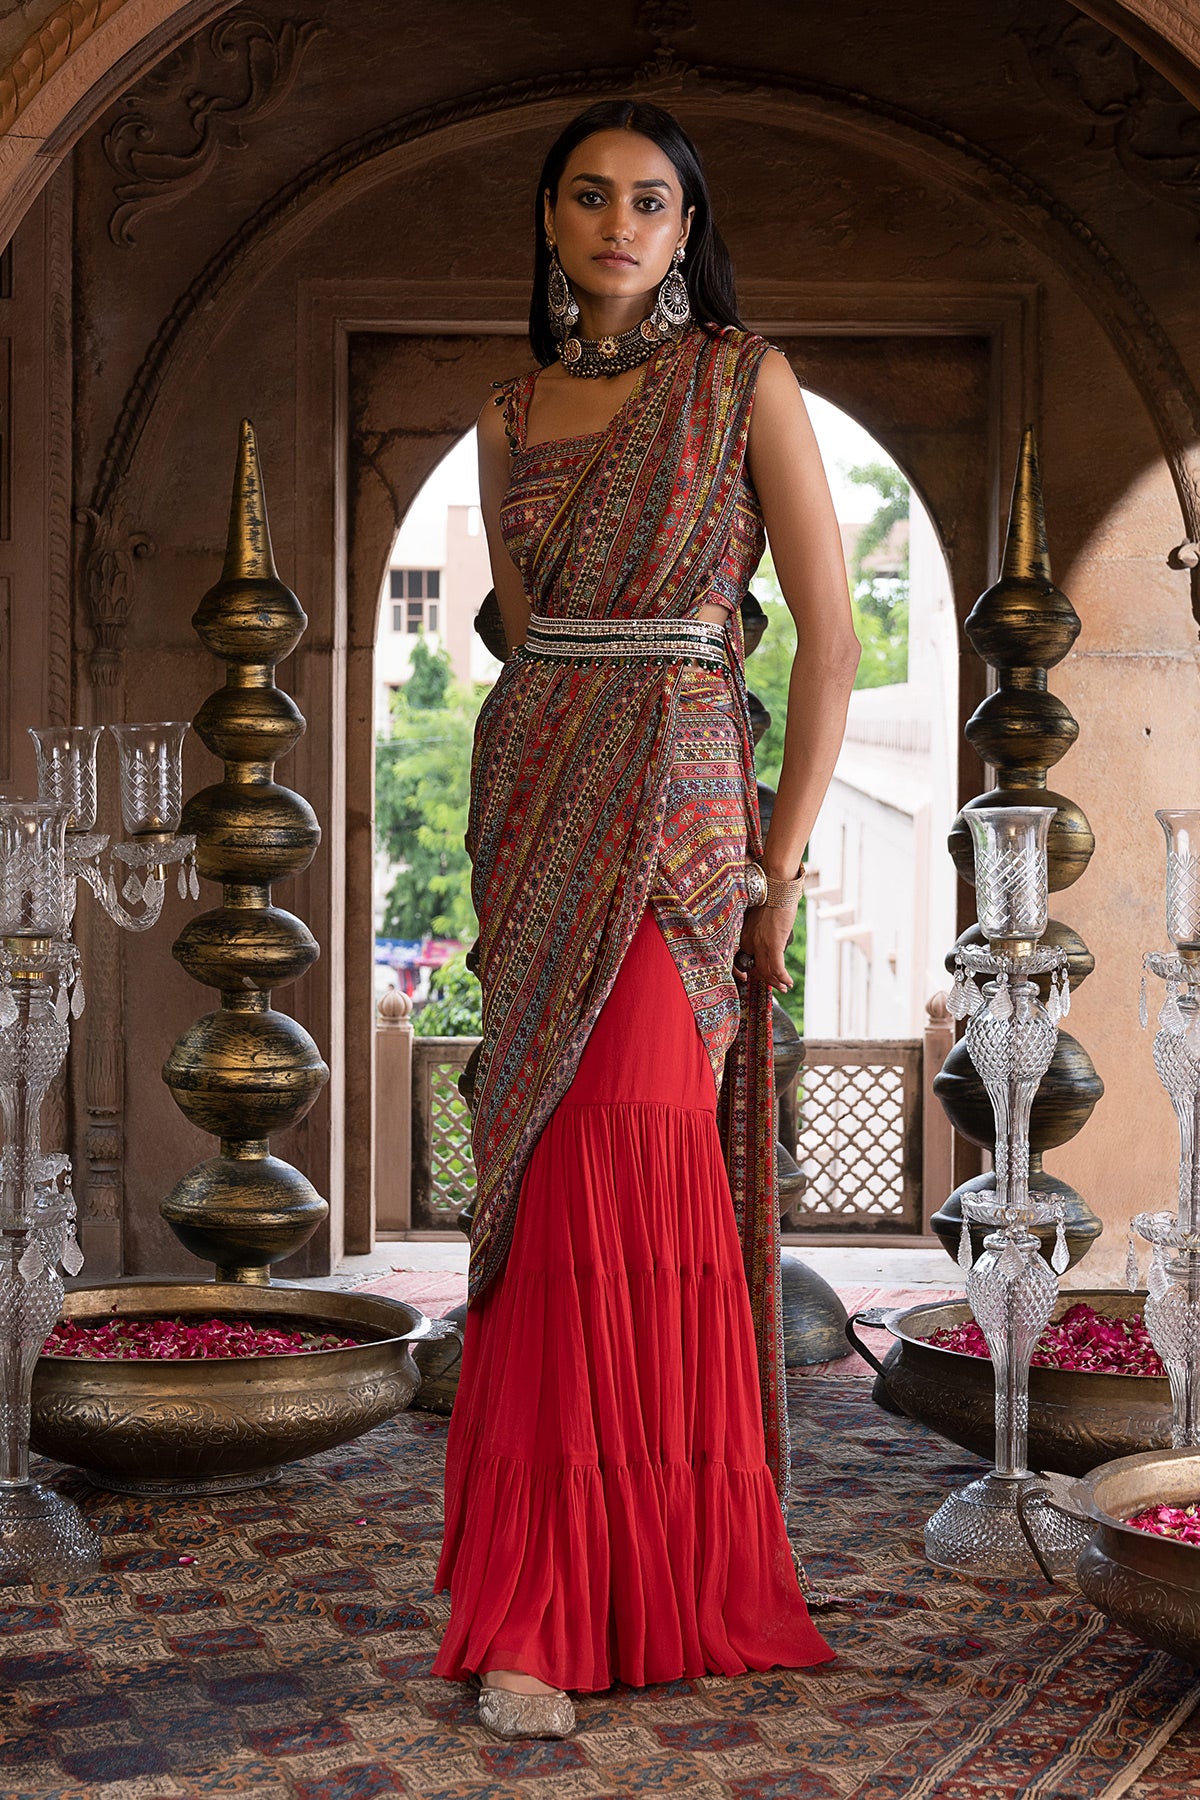 Red Printed Sharara Saree With Blouse And Belt – Chhavvi Aggarwal